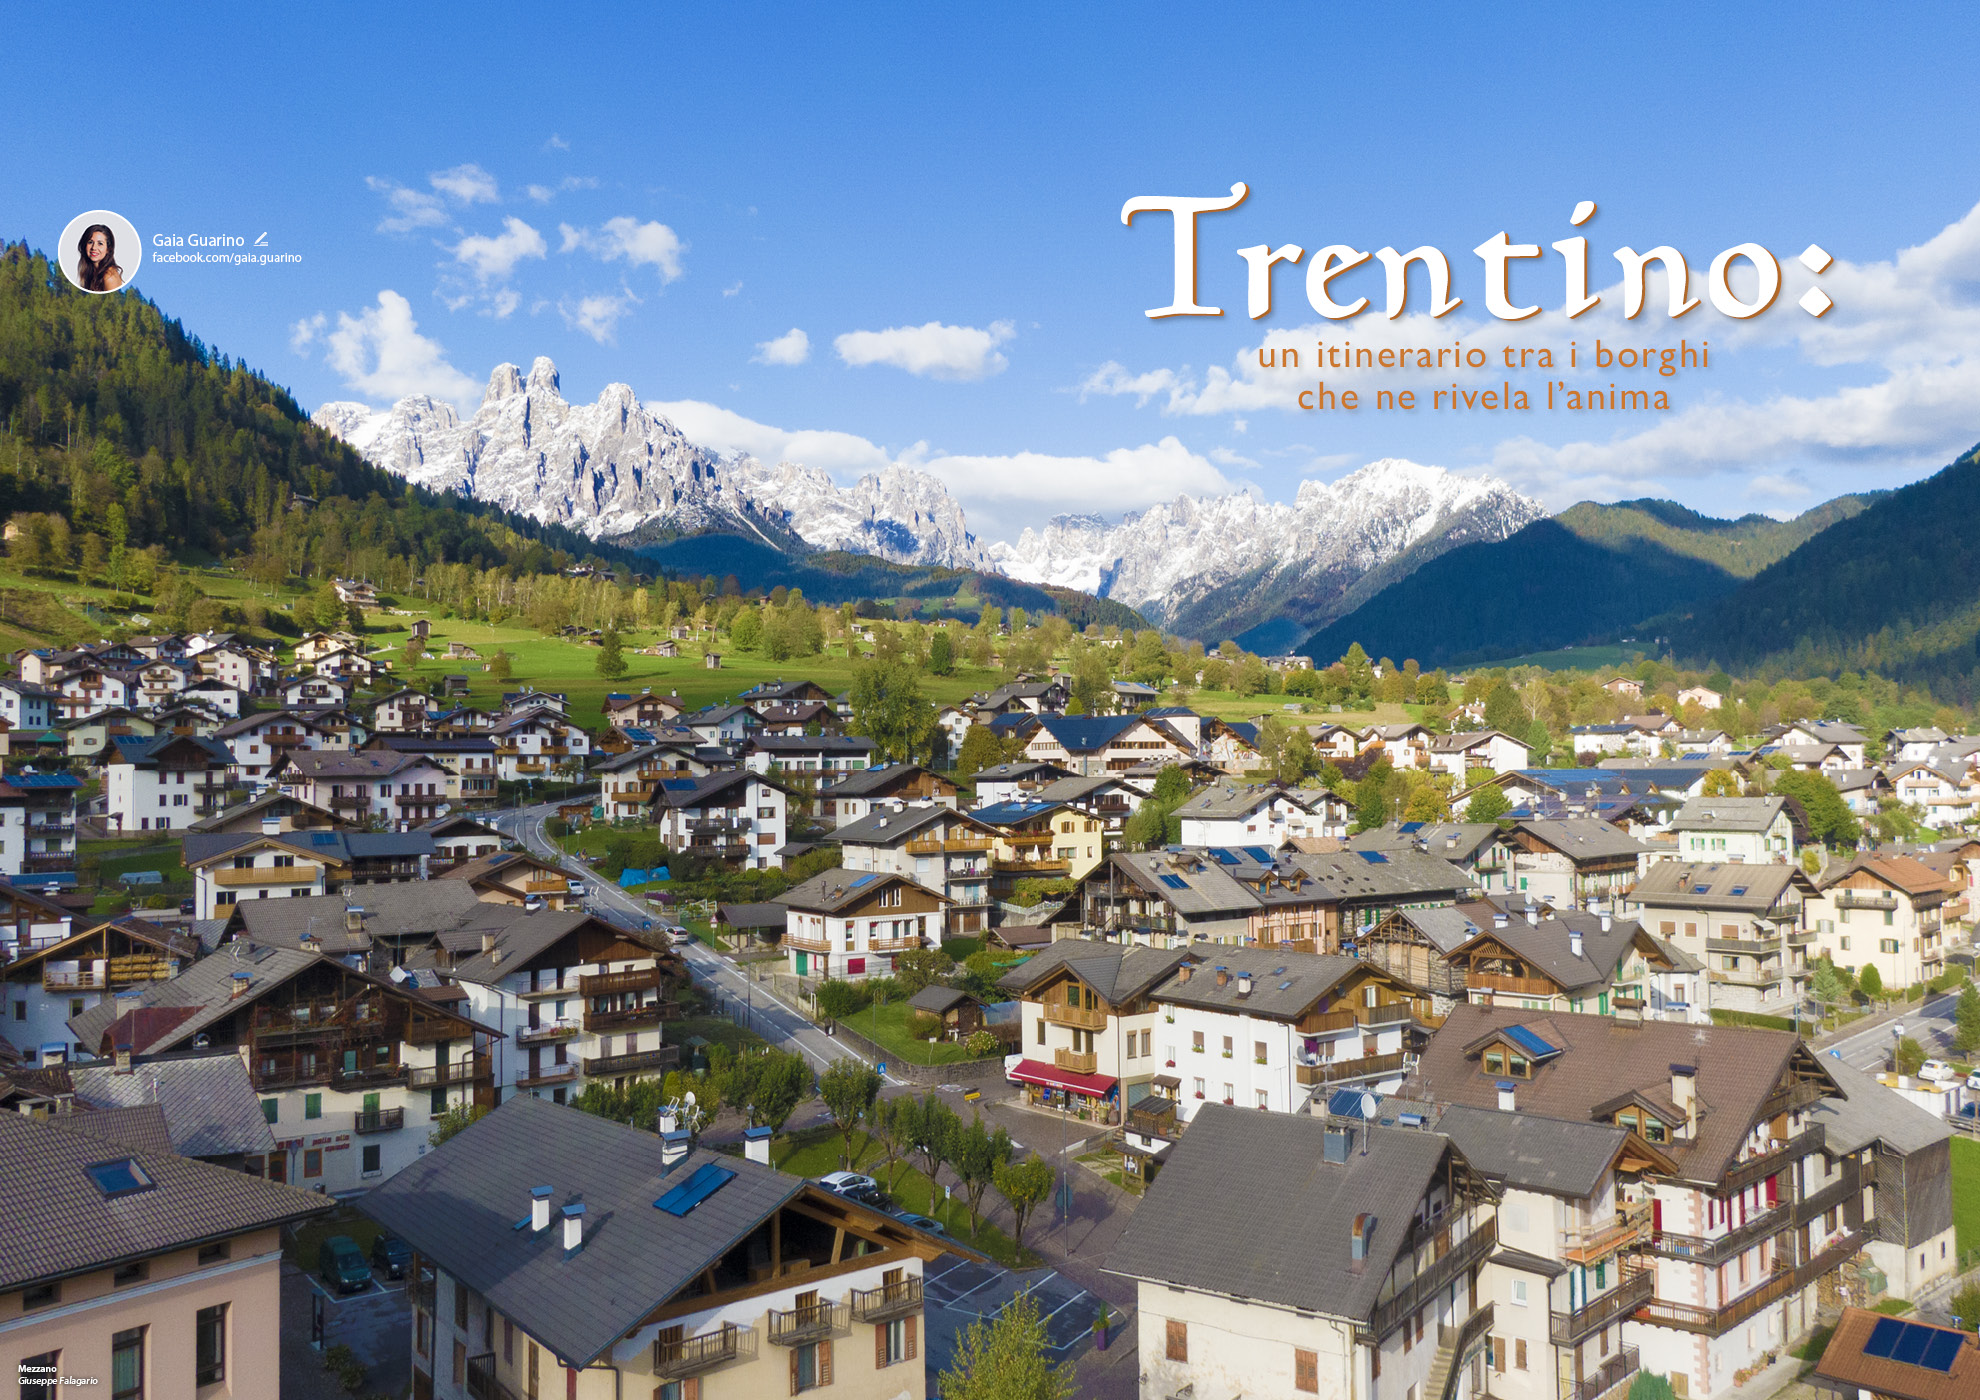 e-borghi travel 19: Speciale tipicità: gusto e artigianato - Trentino: un itinerario tra i borghi che ne rivela l’anima